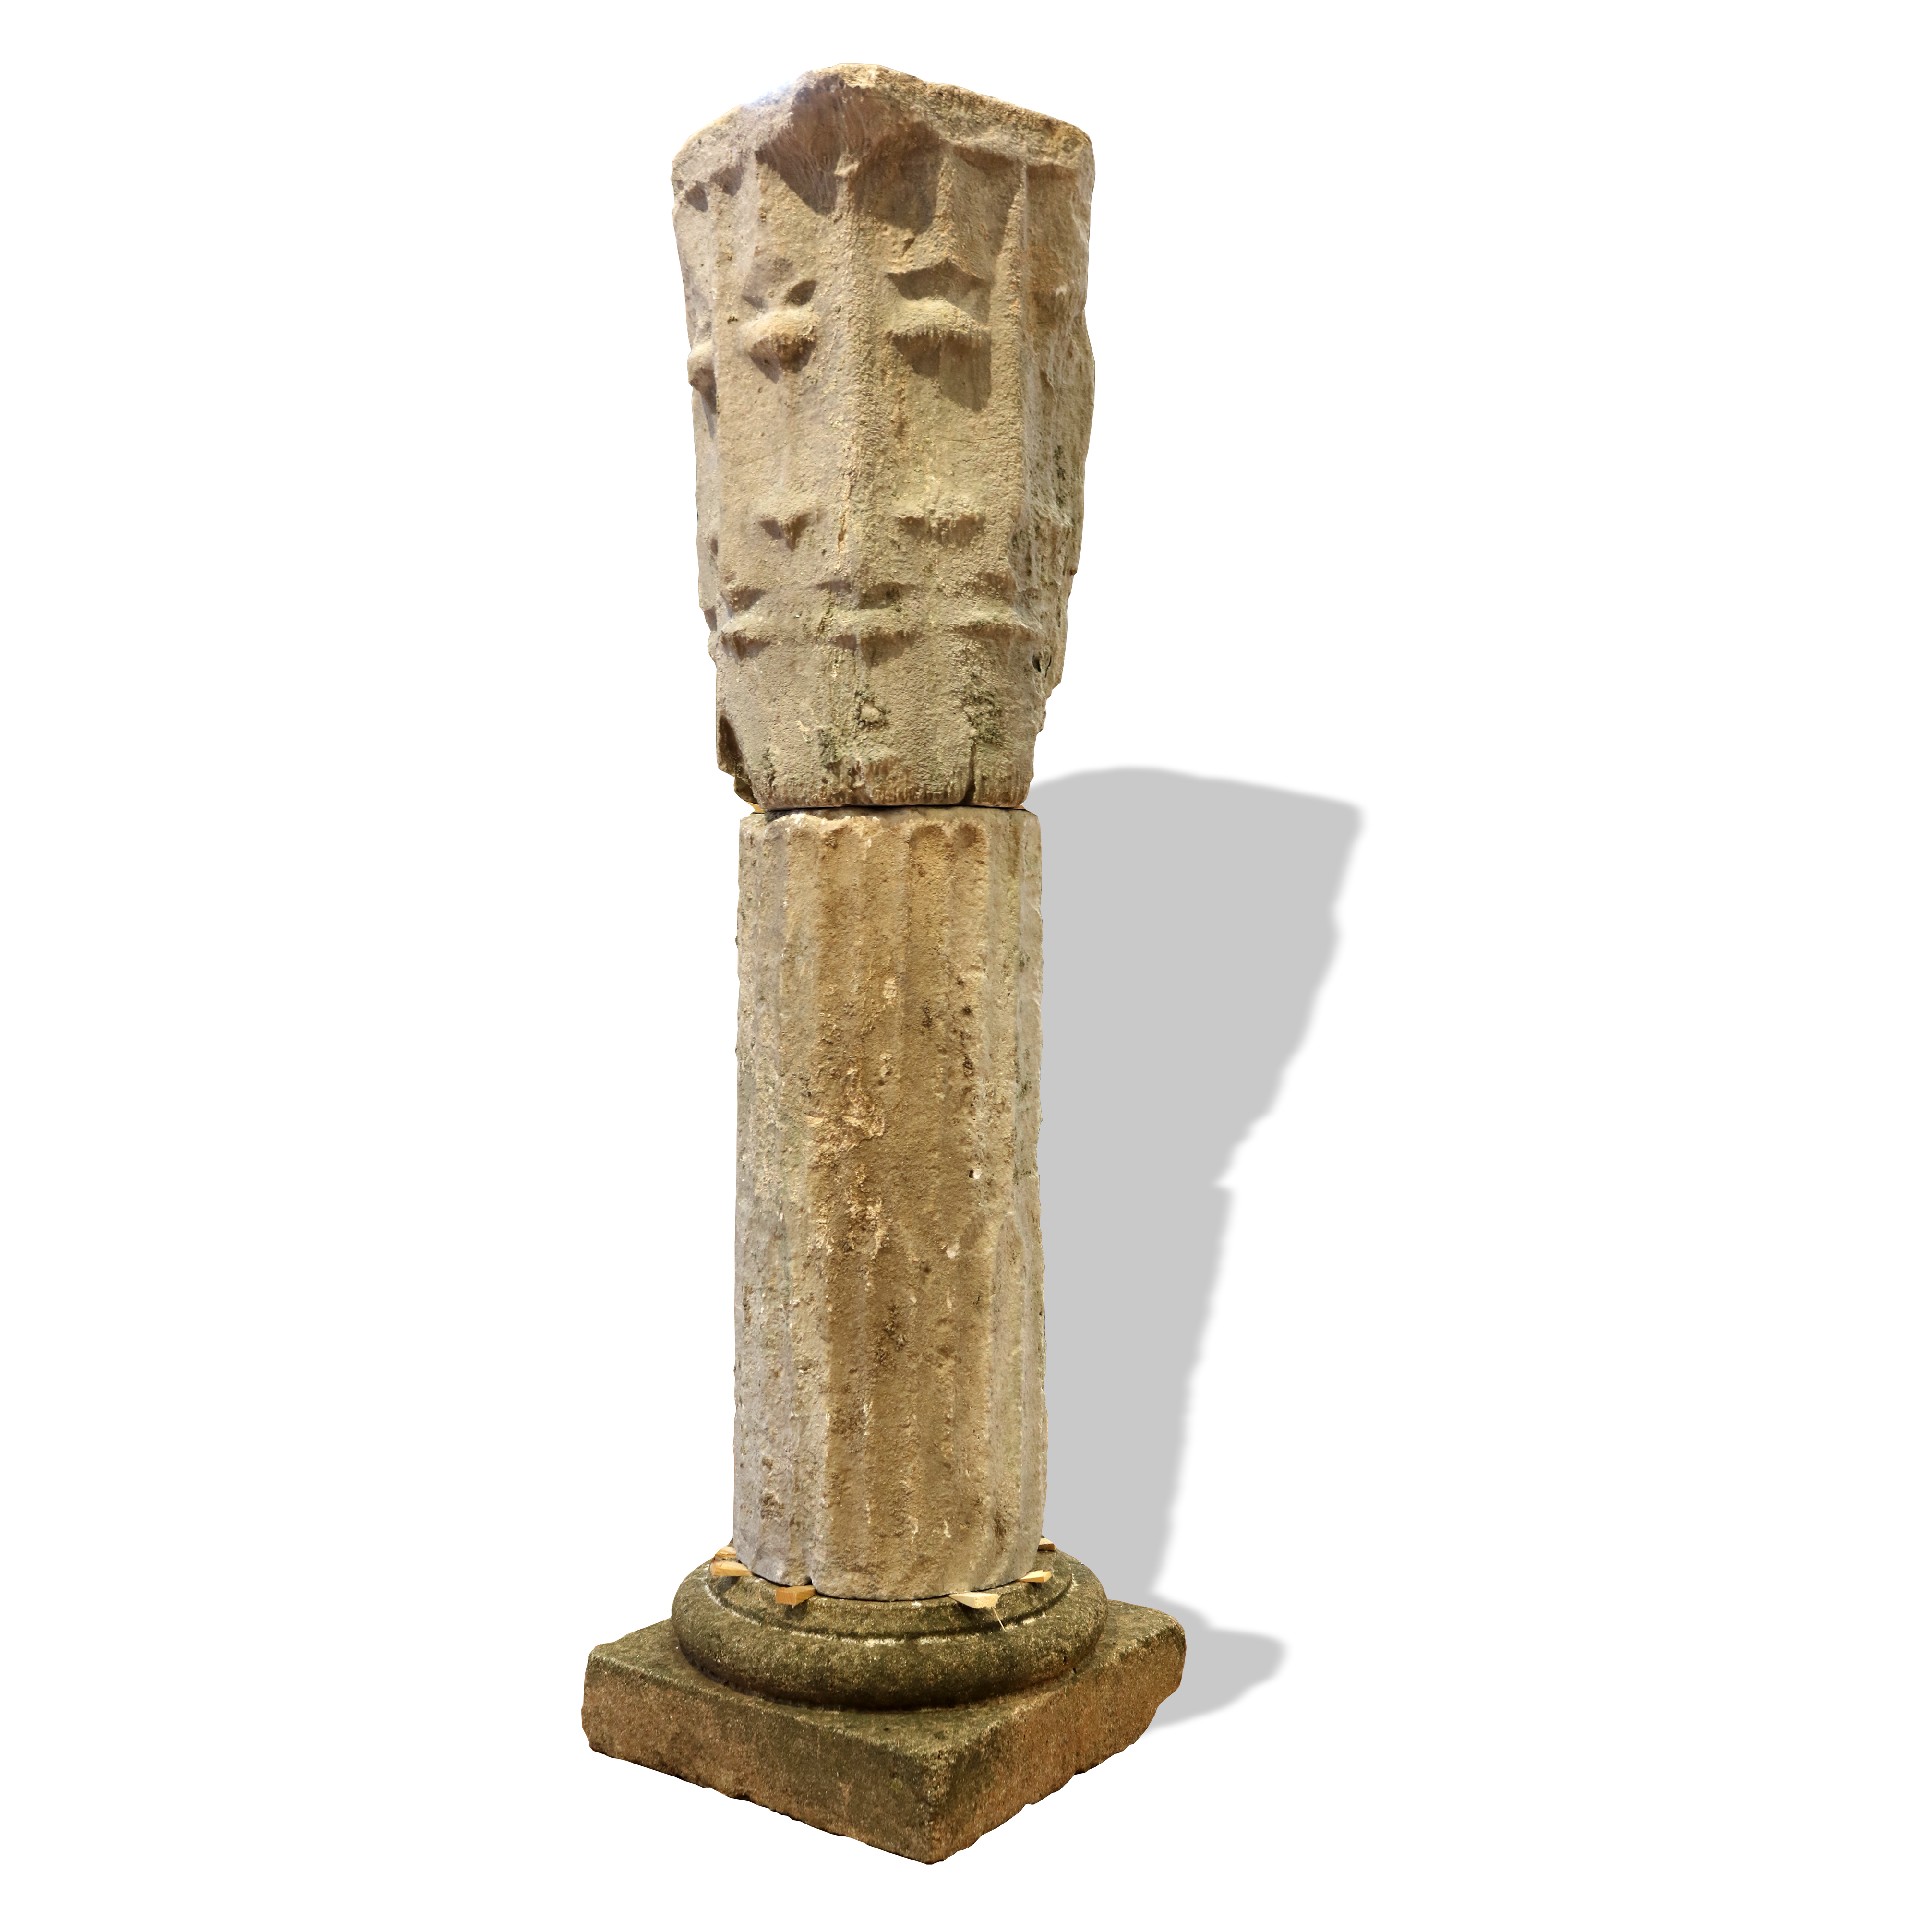 Antica colonna con capitello in alabastro. - Colonne antiche - Architettura - Prodotti - Antichità Fiorillo